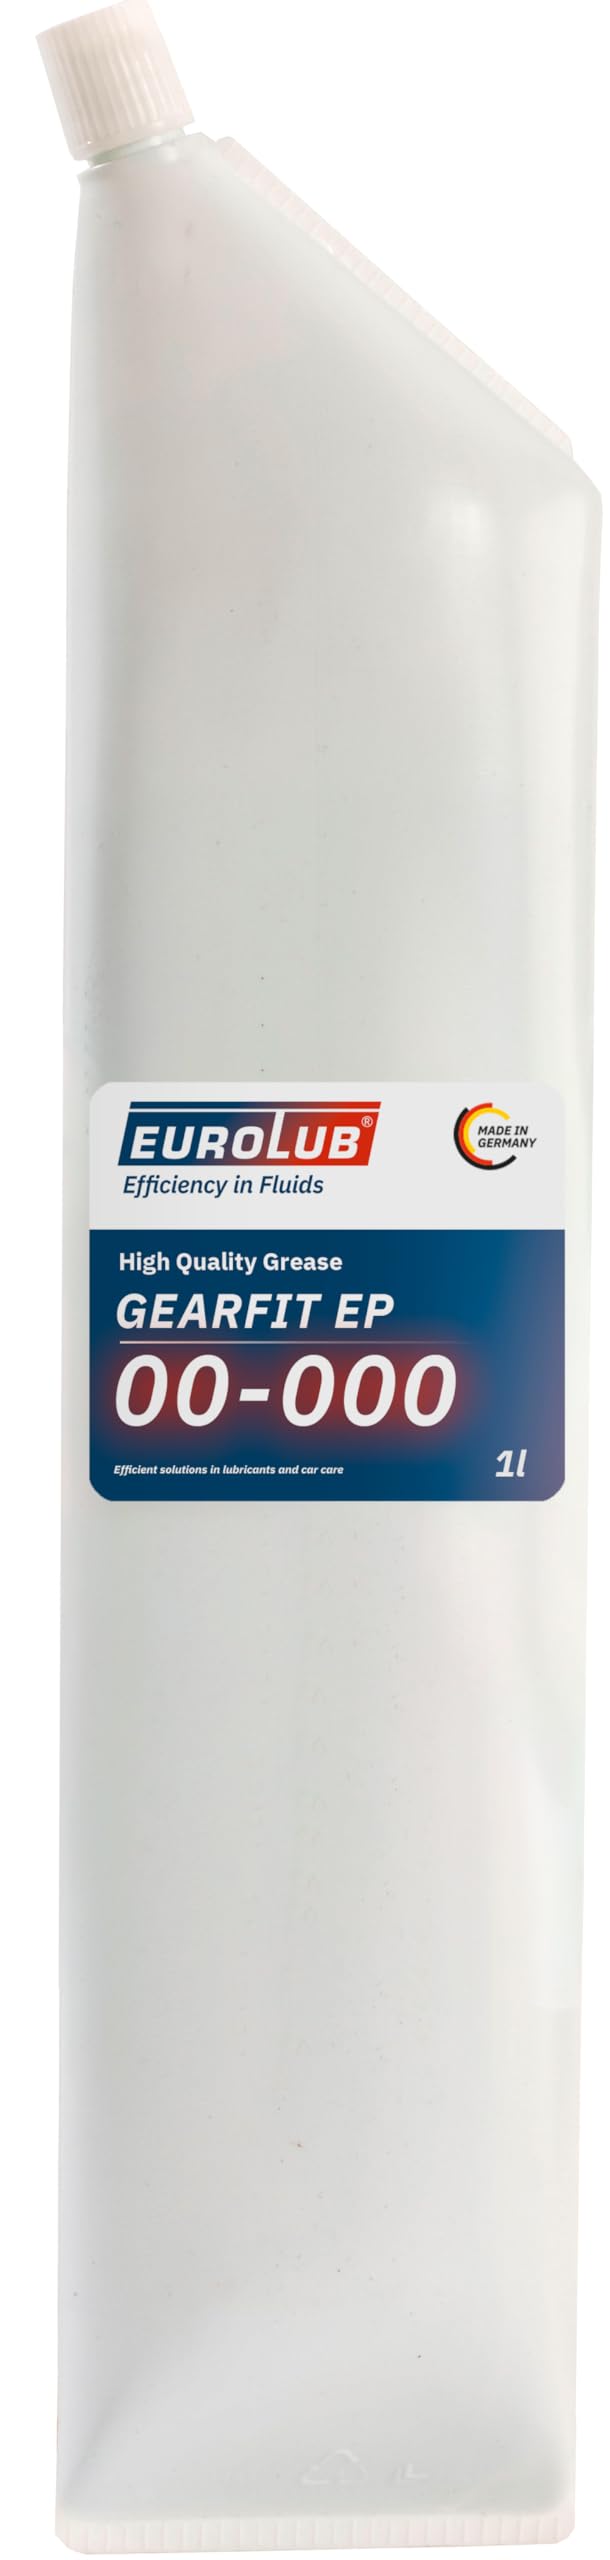 EUROLUB 708900 Gearfit 00-000 EP 00-000 Schmierfett, 900 g von EUROLUB